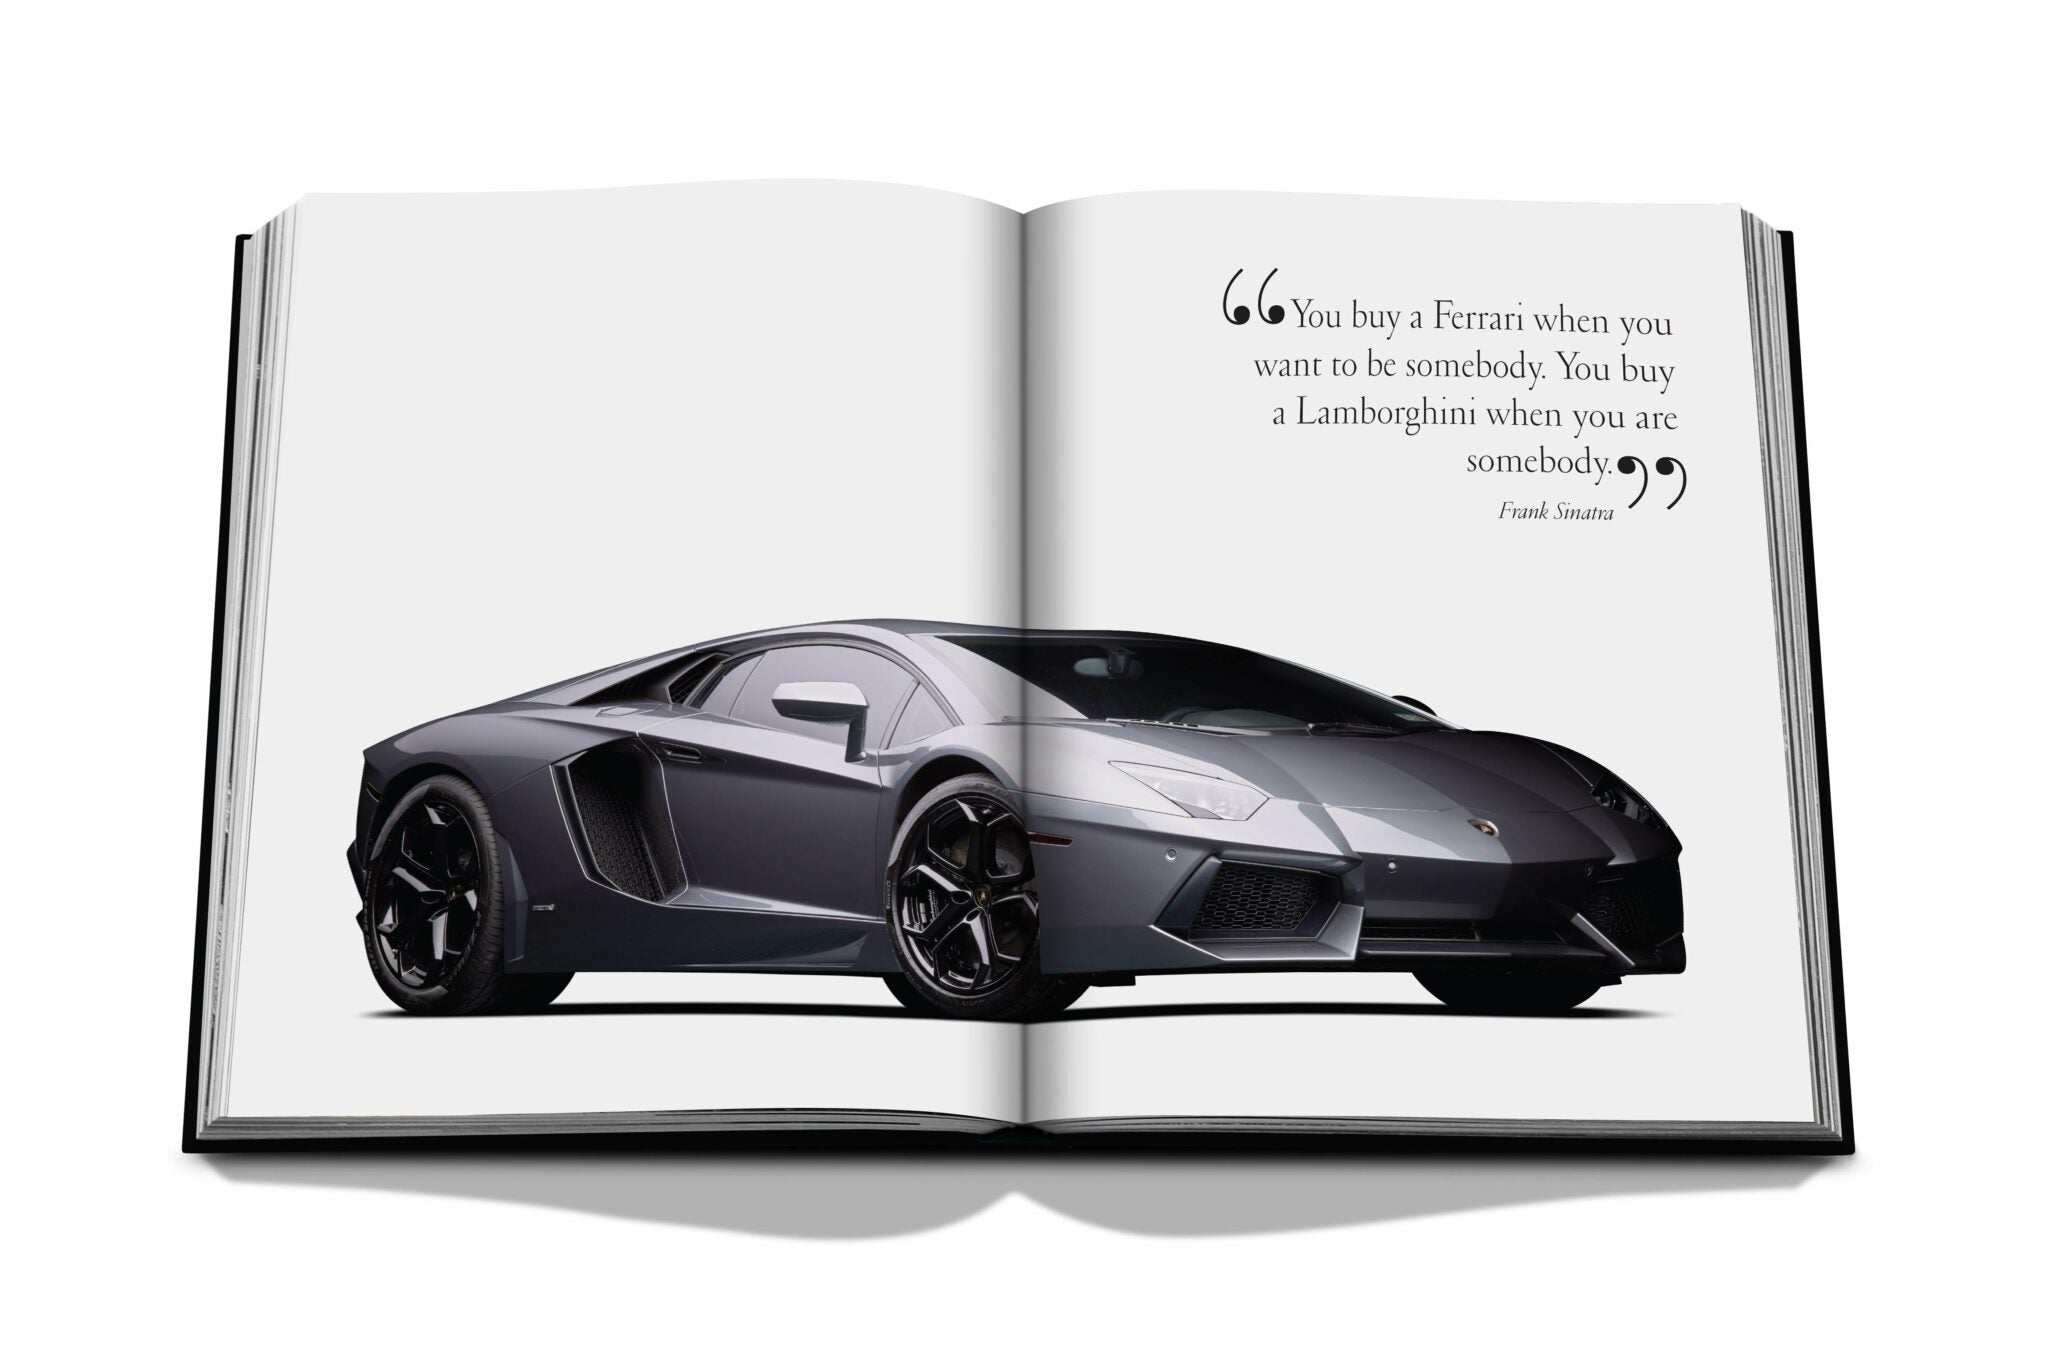 Assouline ikonisk: konst, design, reklam och bilen